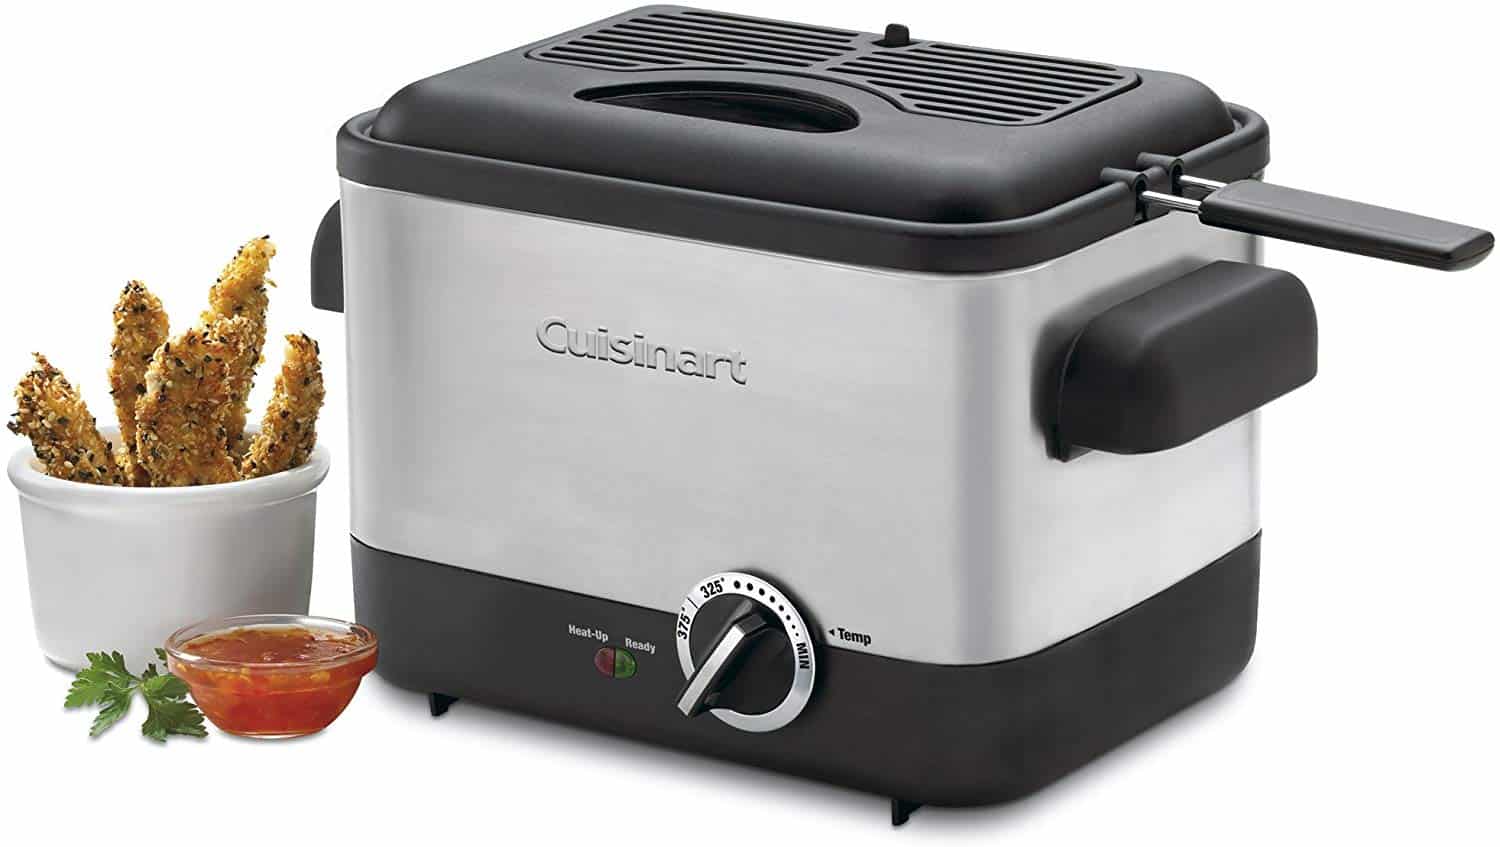 Cuisinart CDF-100 Compact 1.1-Liter Deep Fryer Review